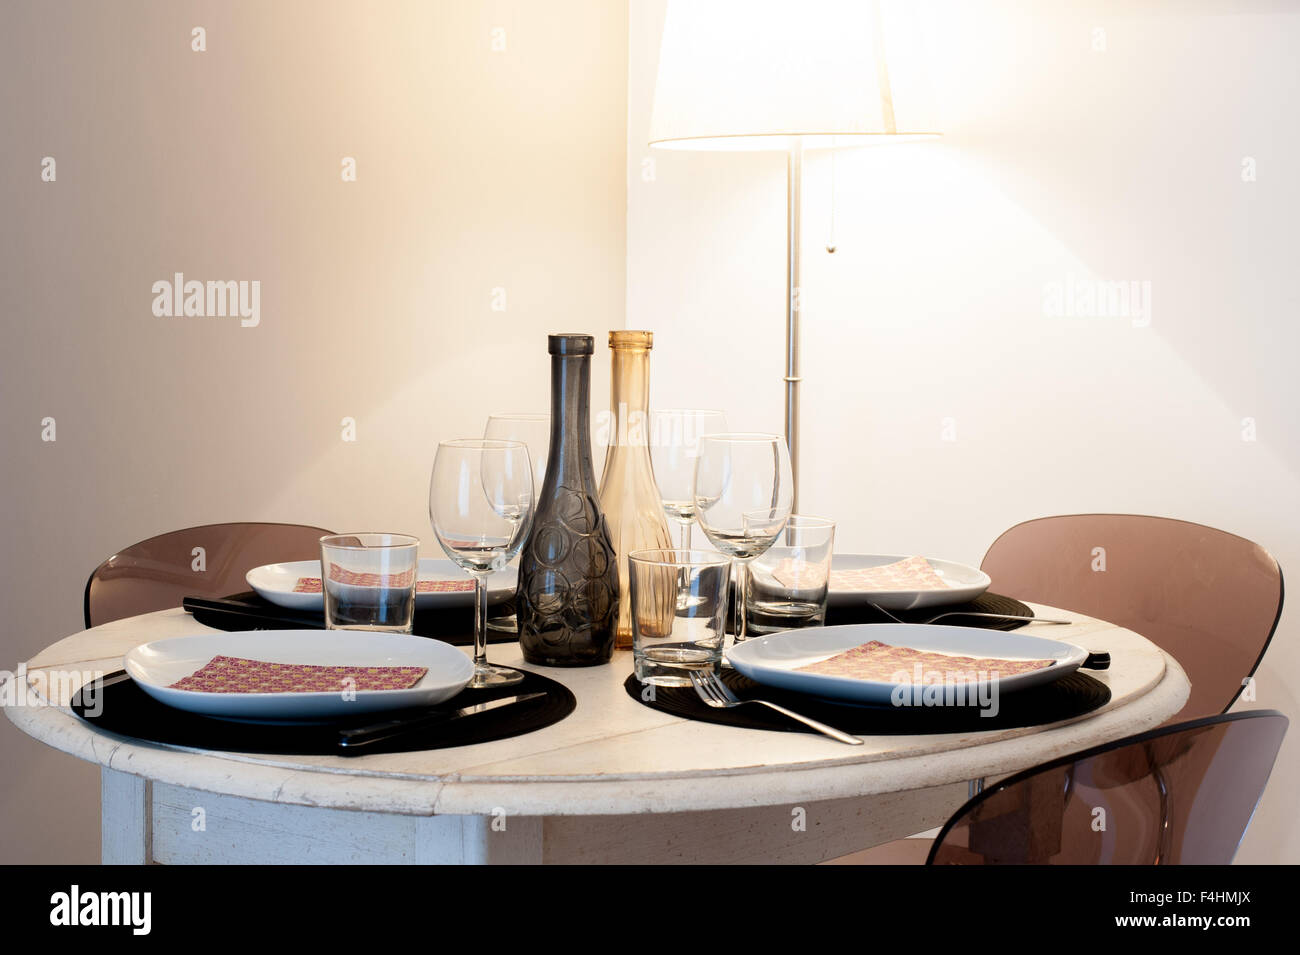 Round set table in una casa in stile rustico di luce di colori marrone, lampada in background Foto Stock